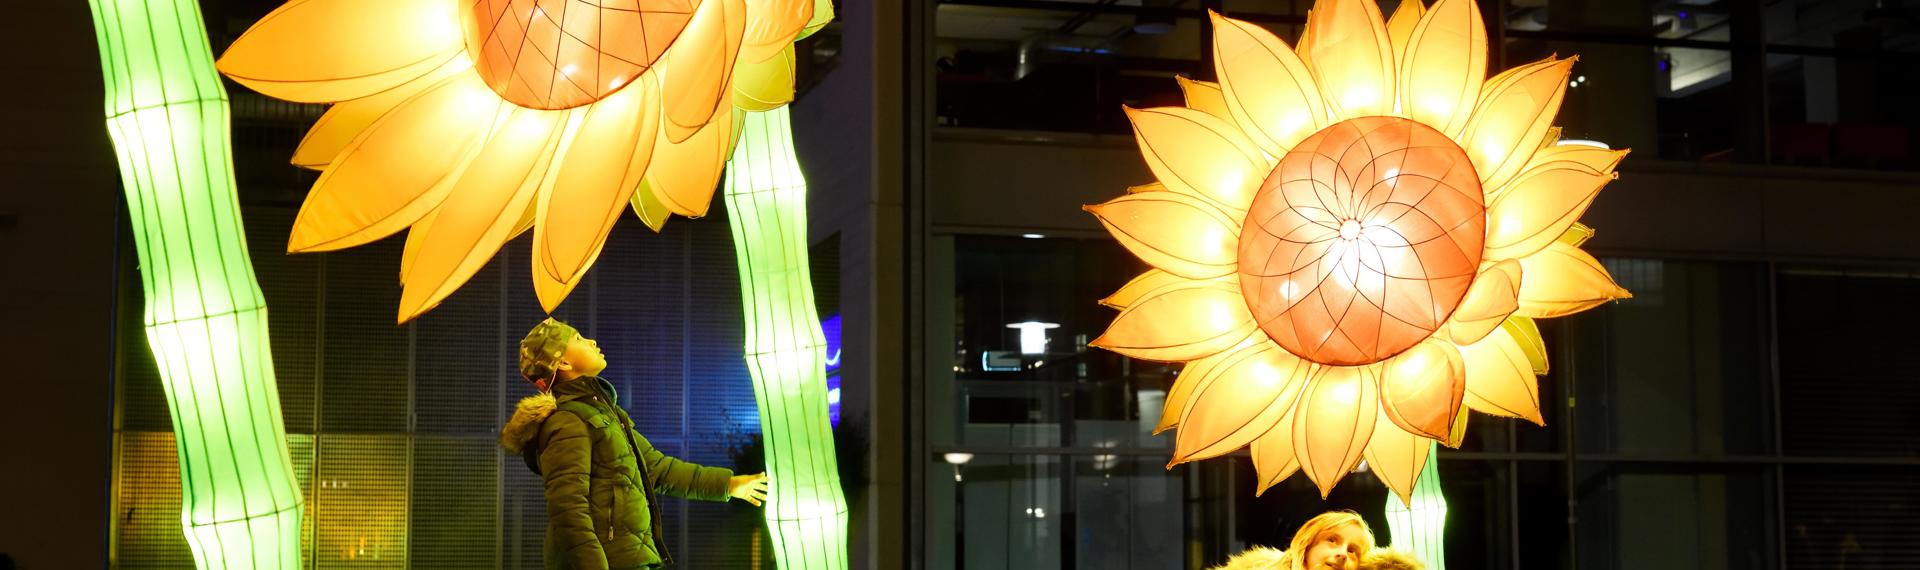 Elk jaar transformeren kunstenaars Eindhoven in GLOW met verrassend design: een stadstentoonstelling van lichtkunst in de open lucht